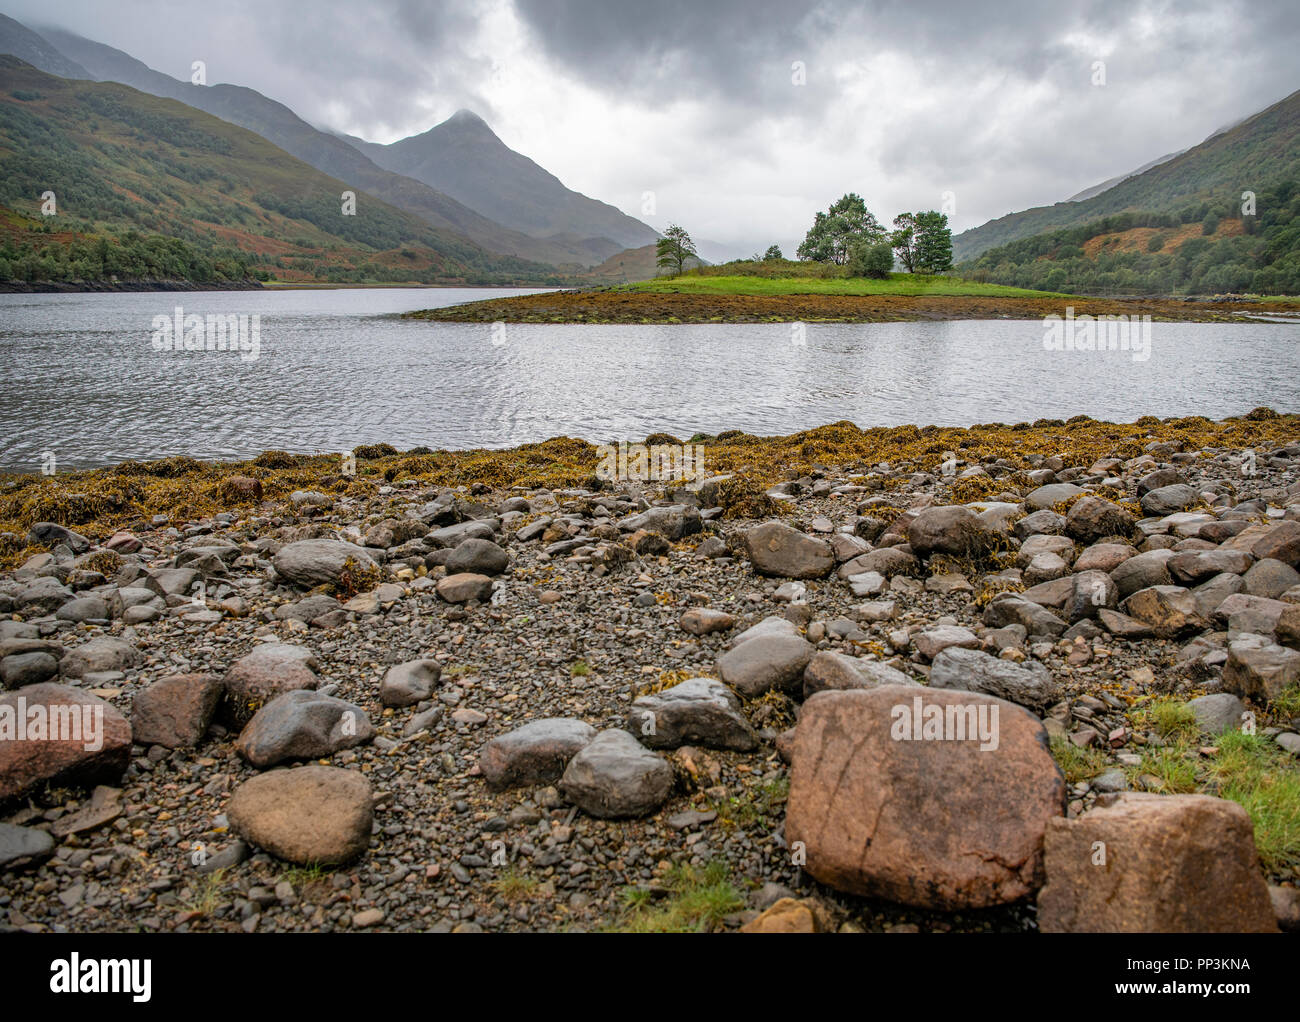 Loch Leven, Scotland Stock Photo